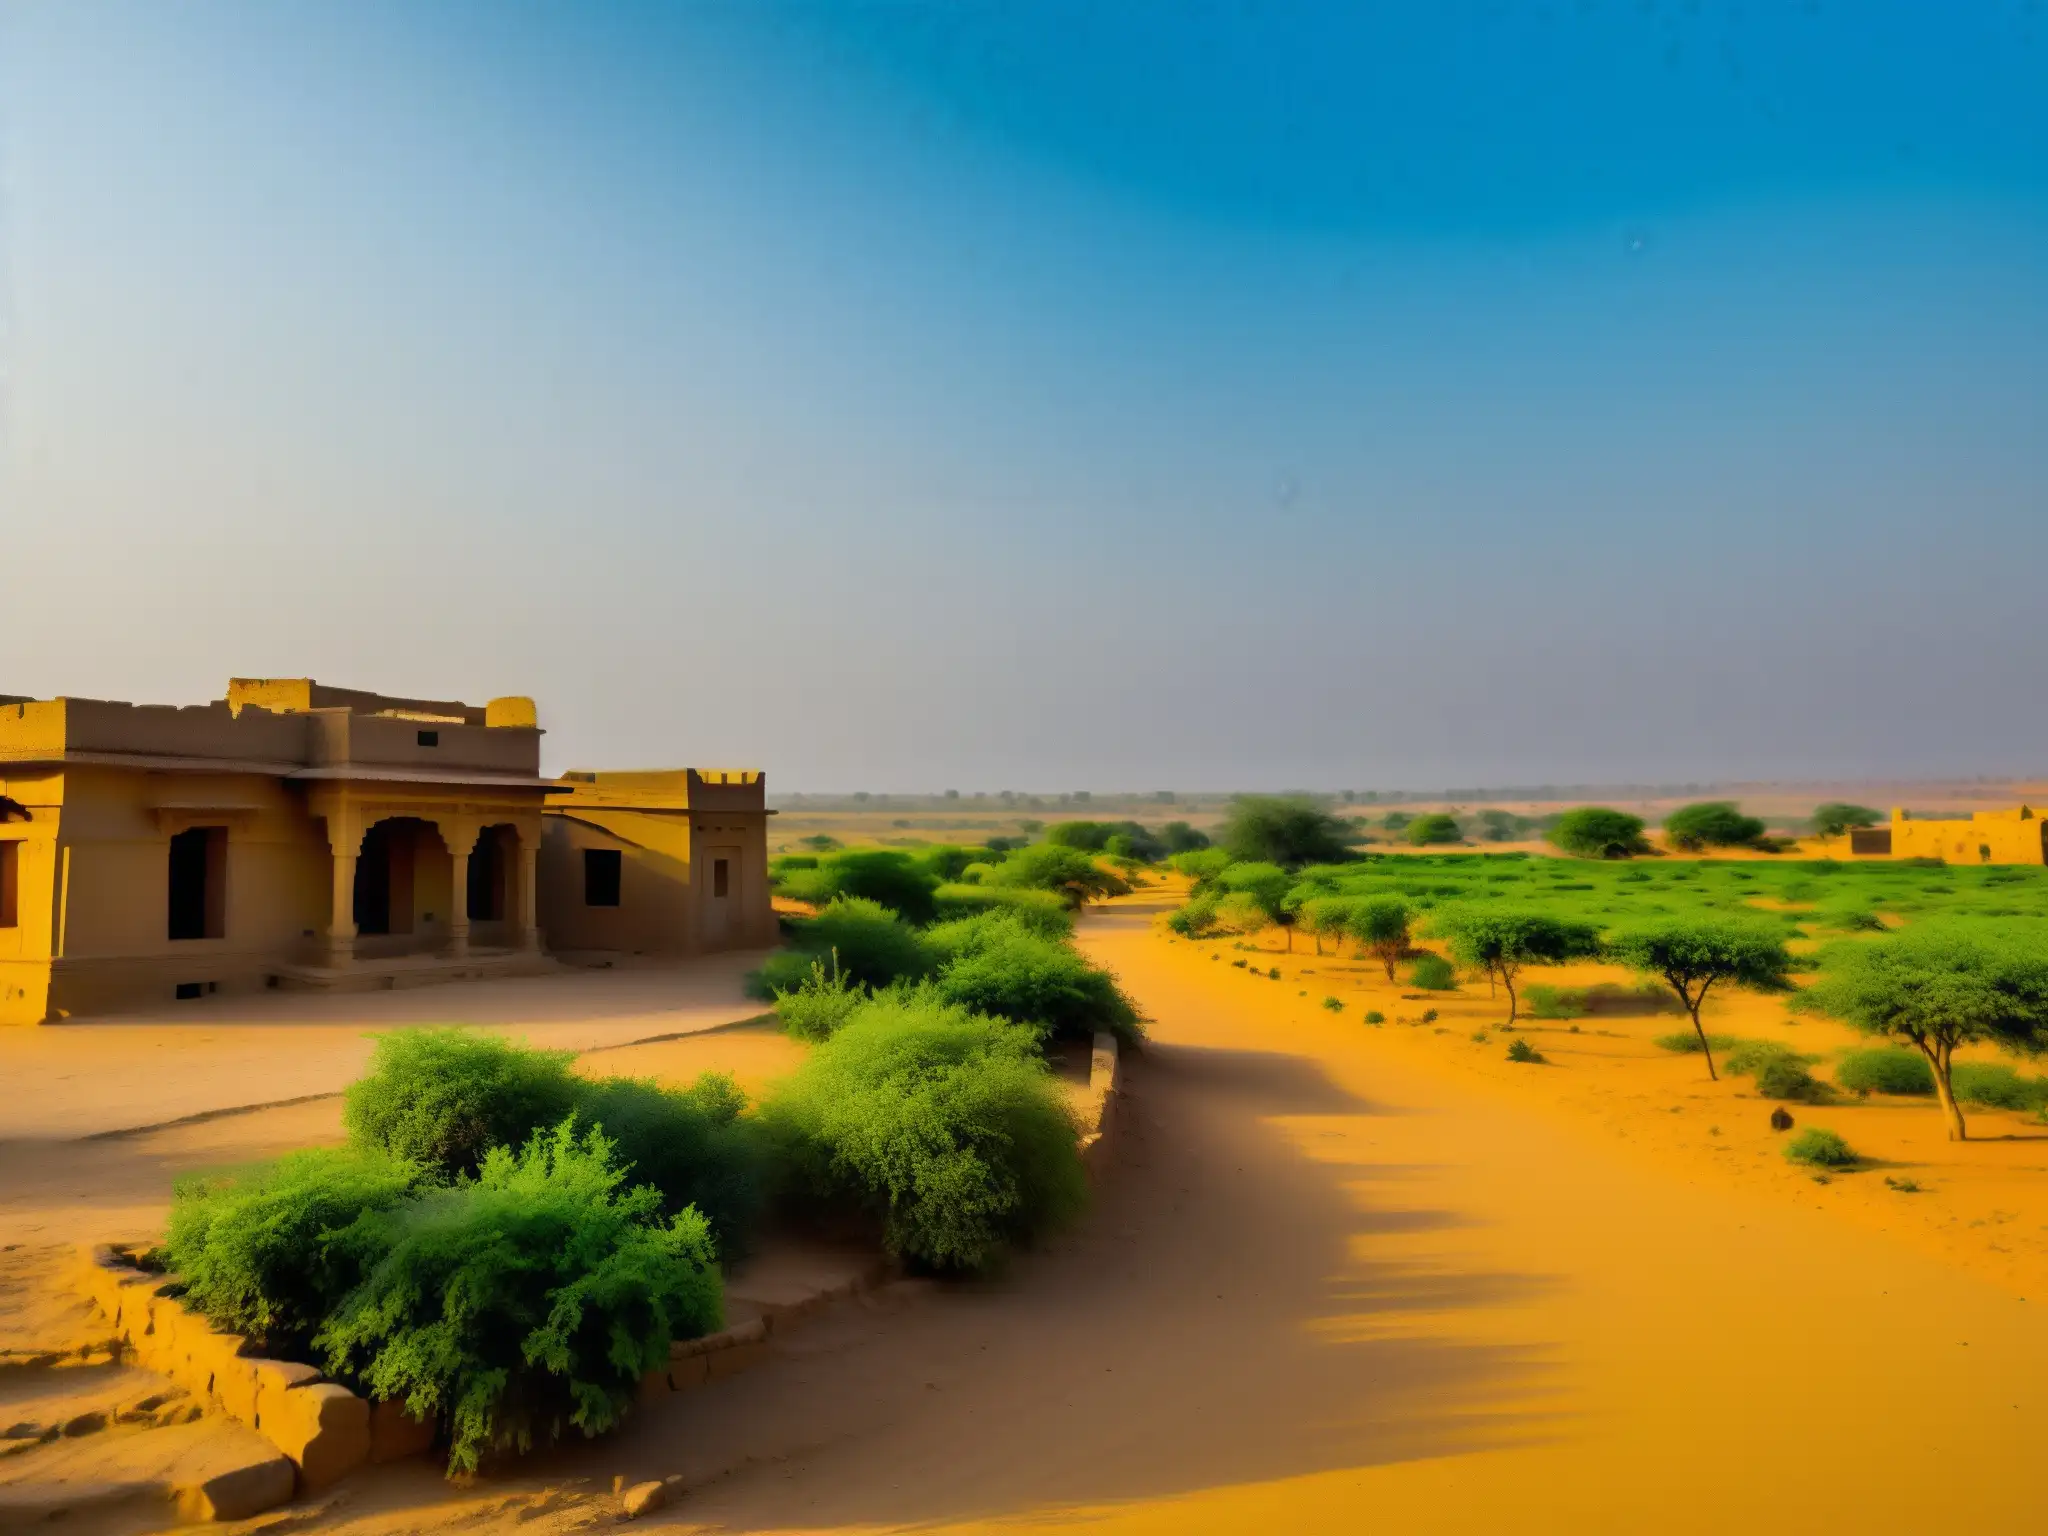 Misterioso pueblo abandonado de Kuldhara, Rajasthan, envuelto en una cálida luz dorada